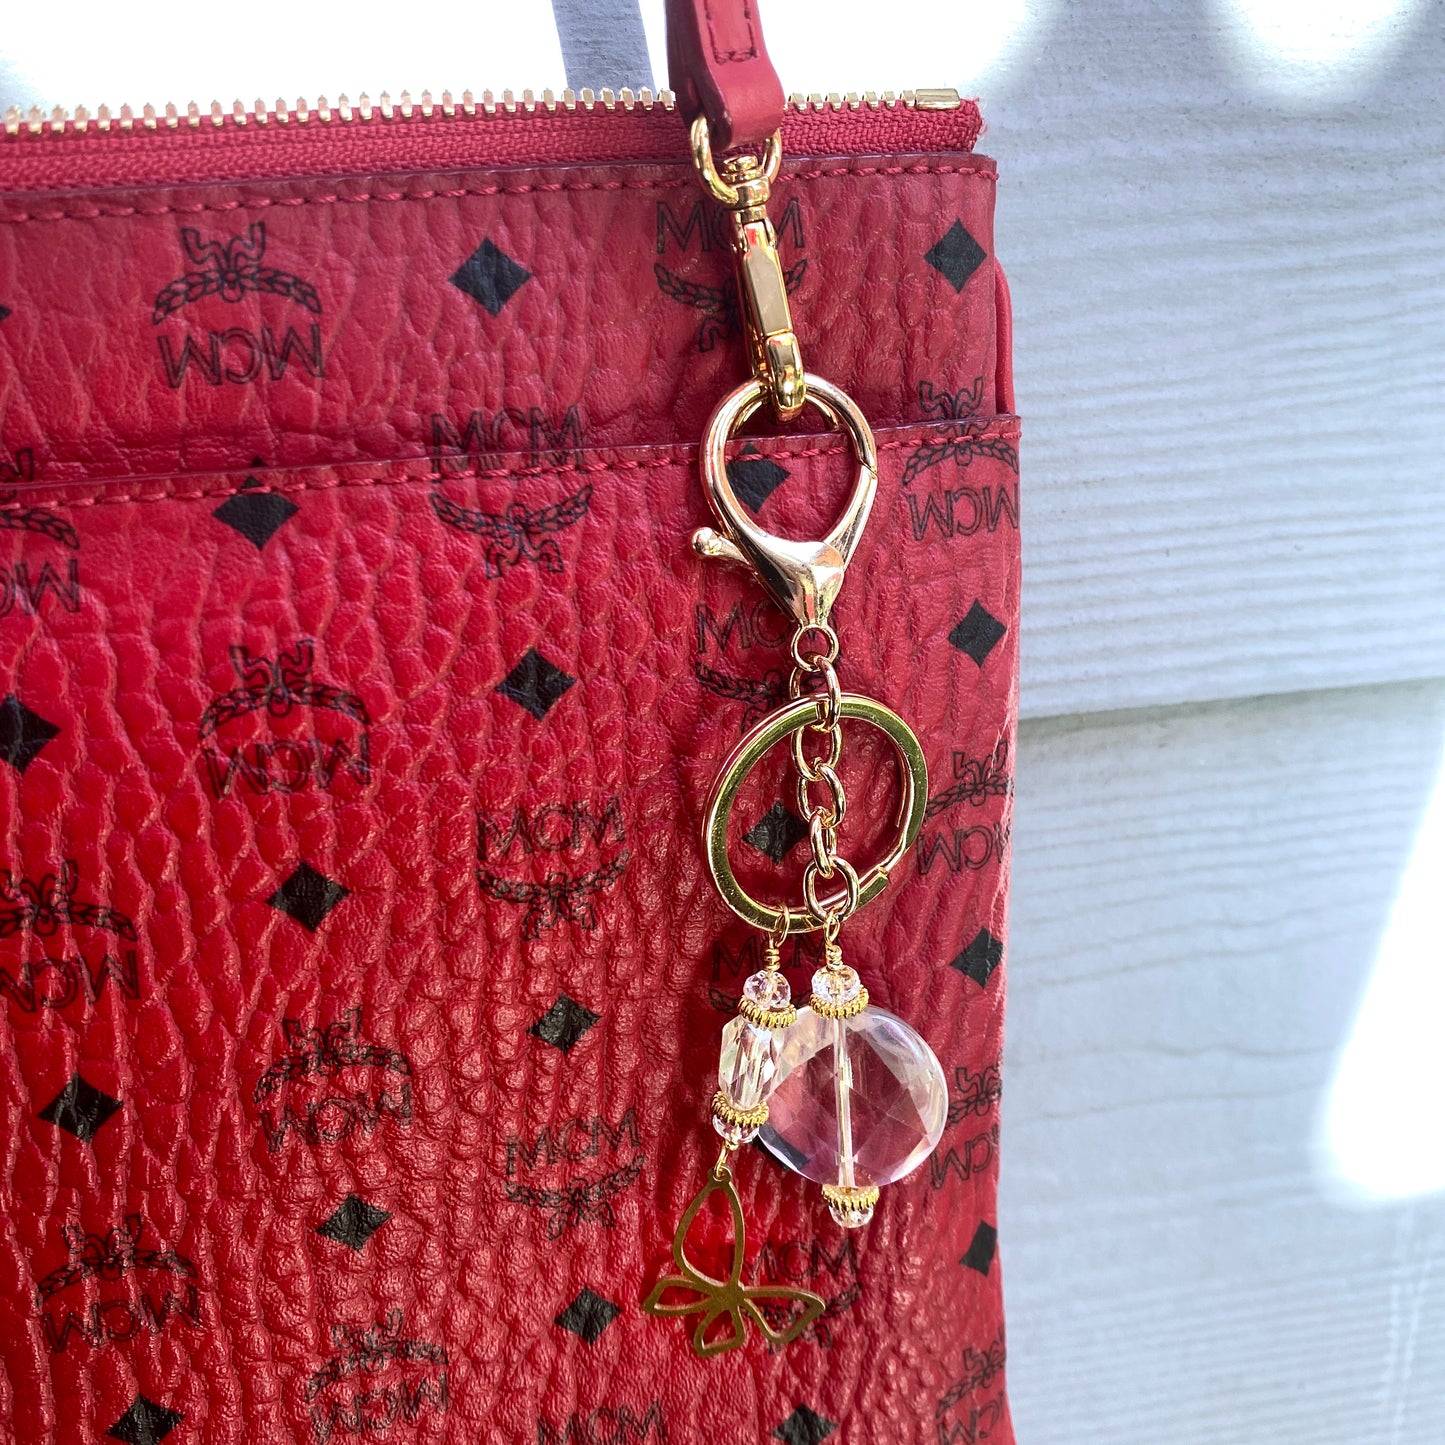 Quartz gemstone with brass Butterfly Zipper Charm